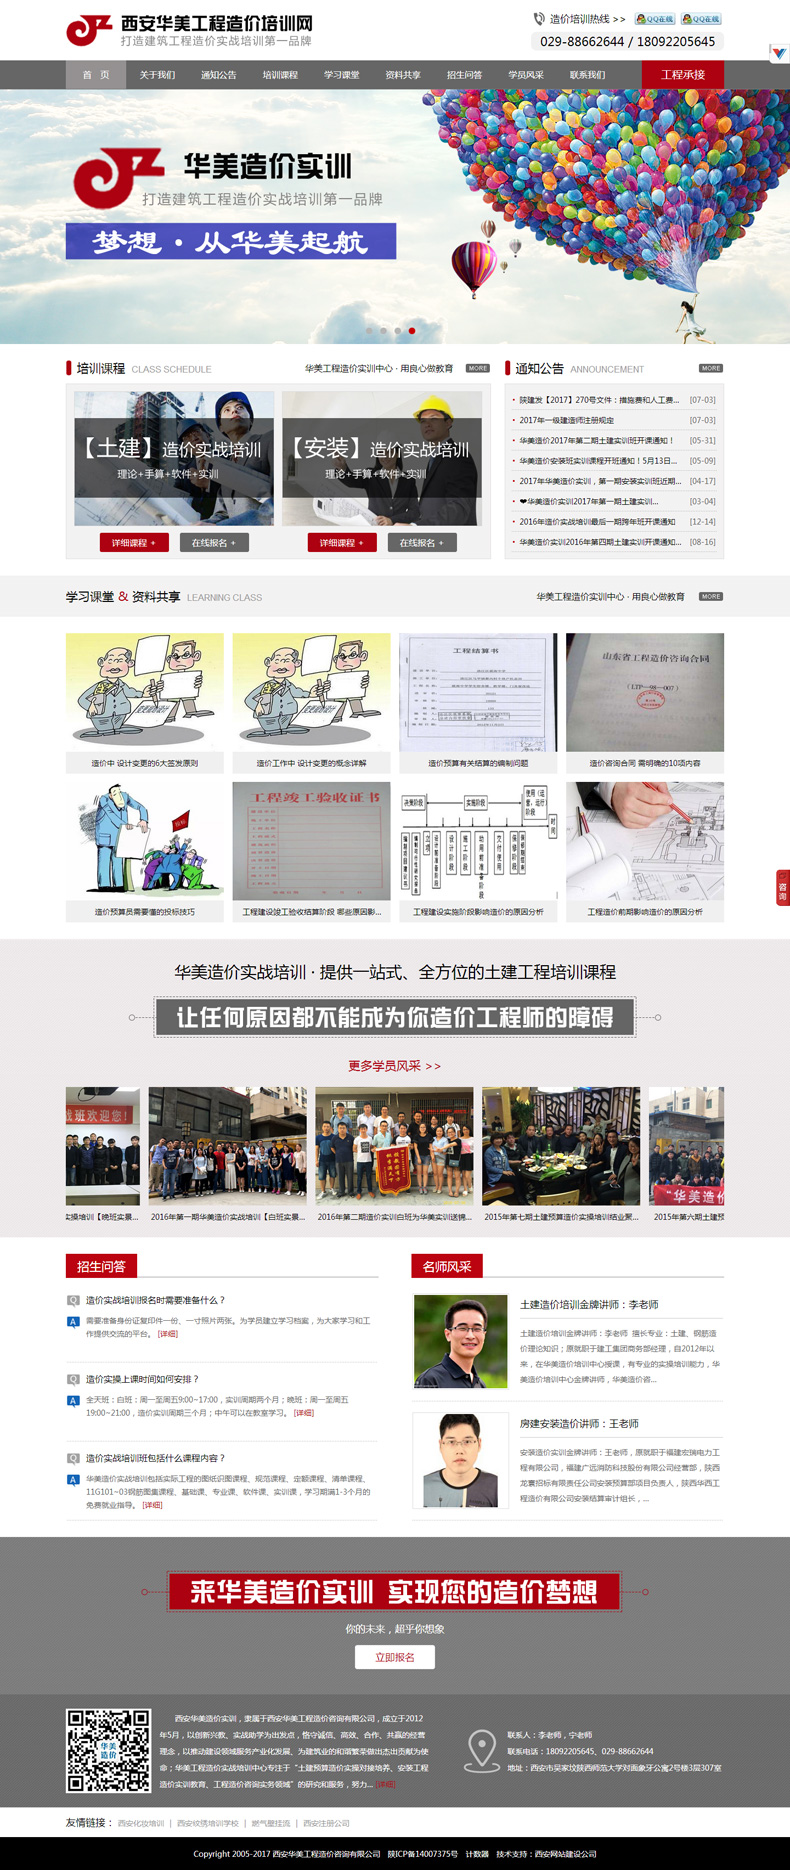 企业网站建设-西安华美工程造价咨询有限公司